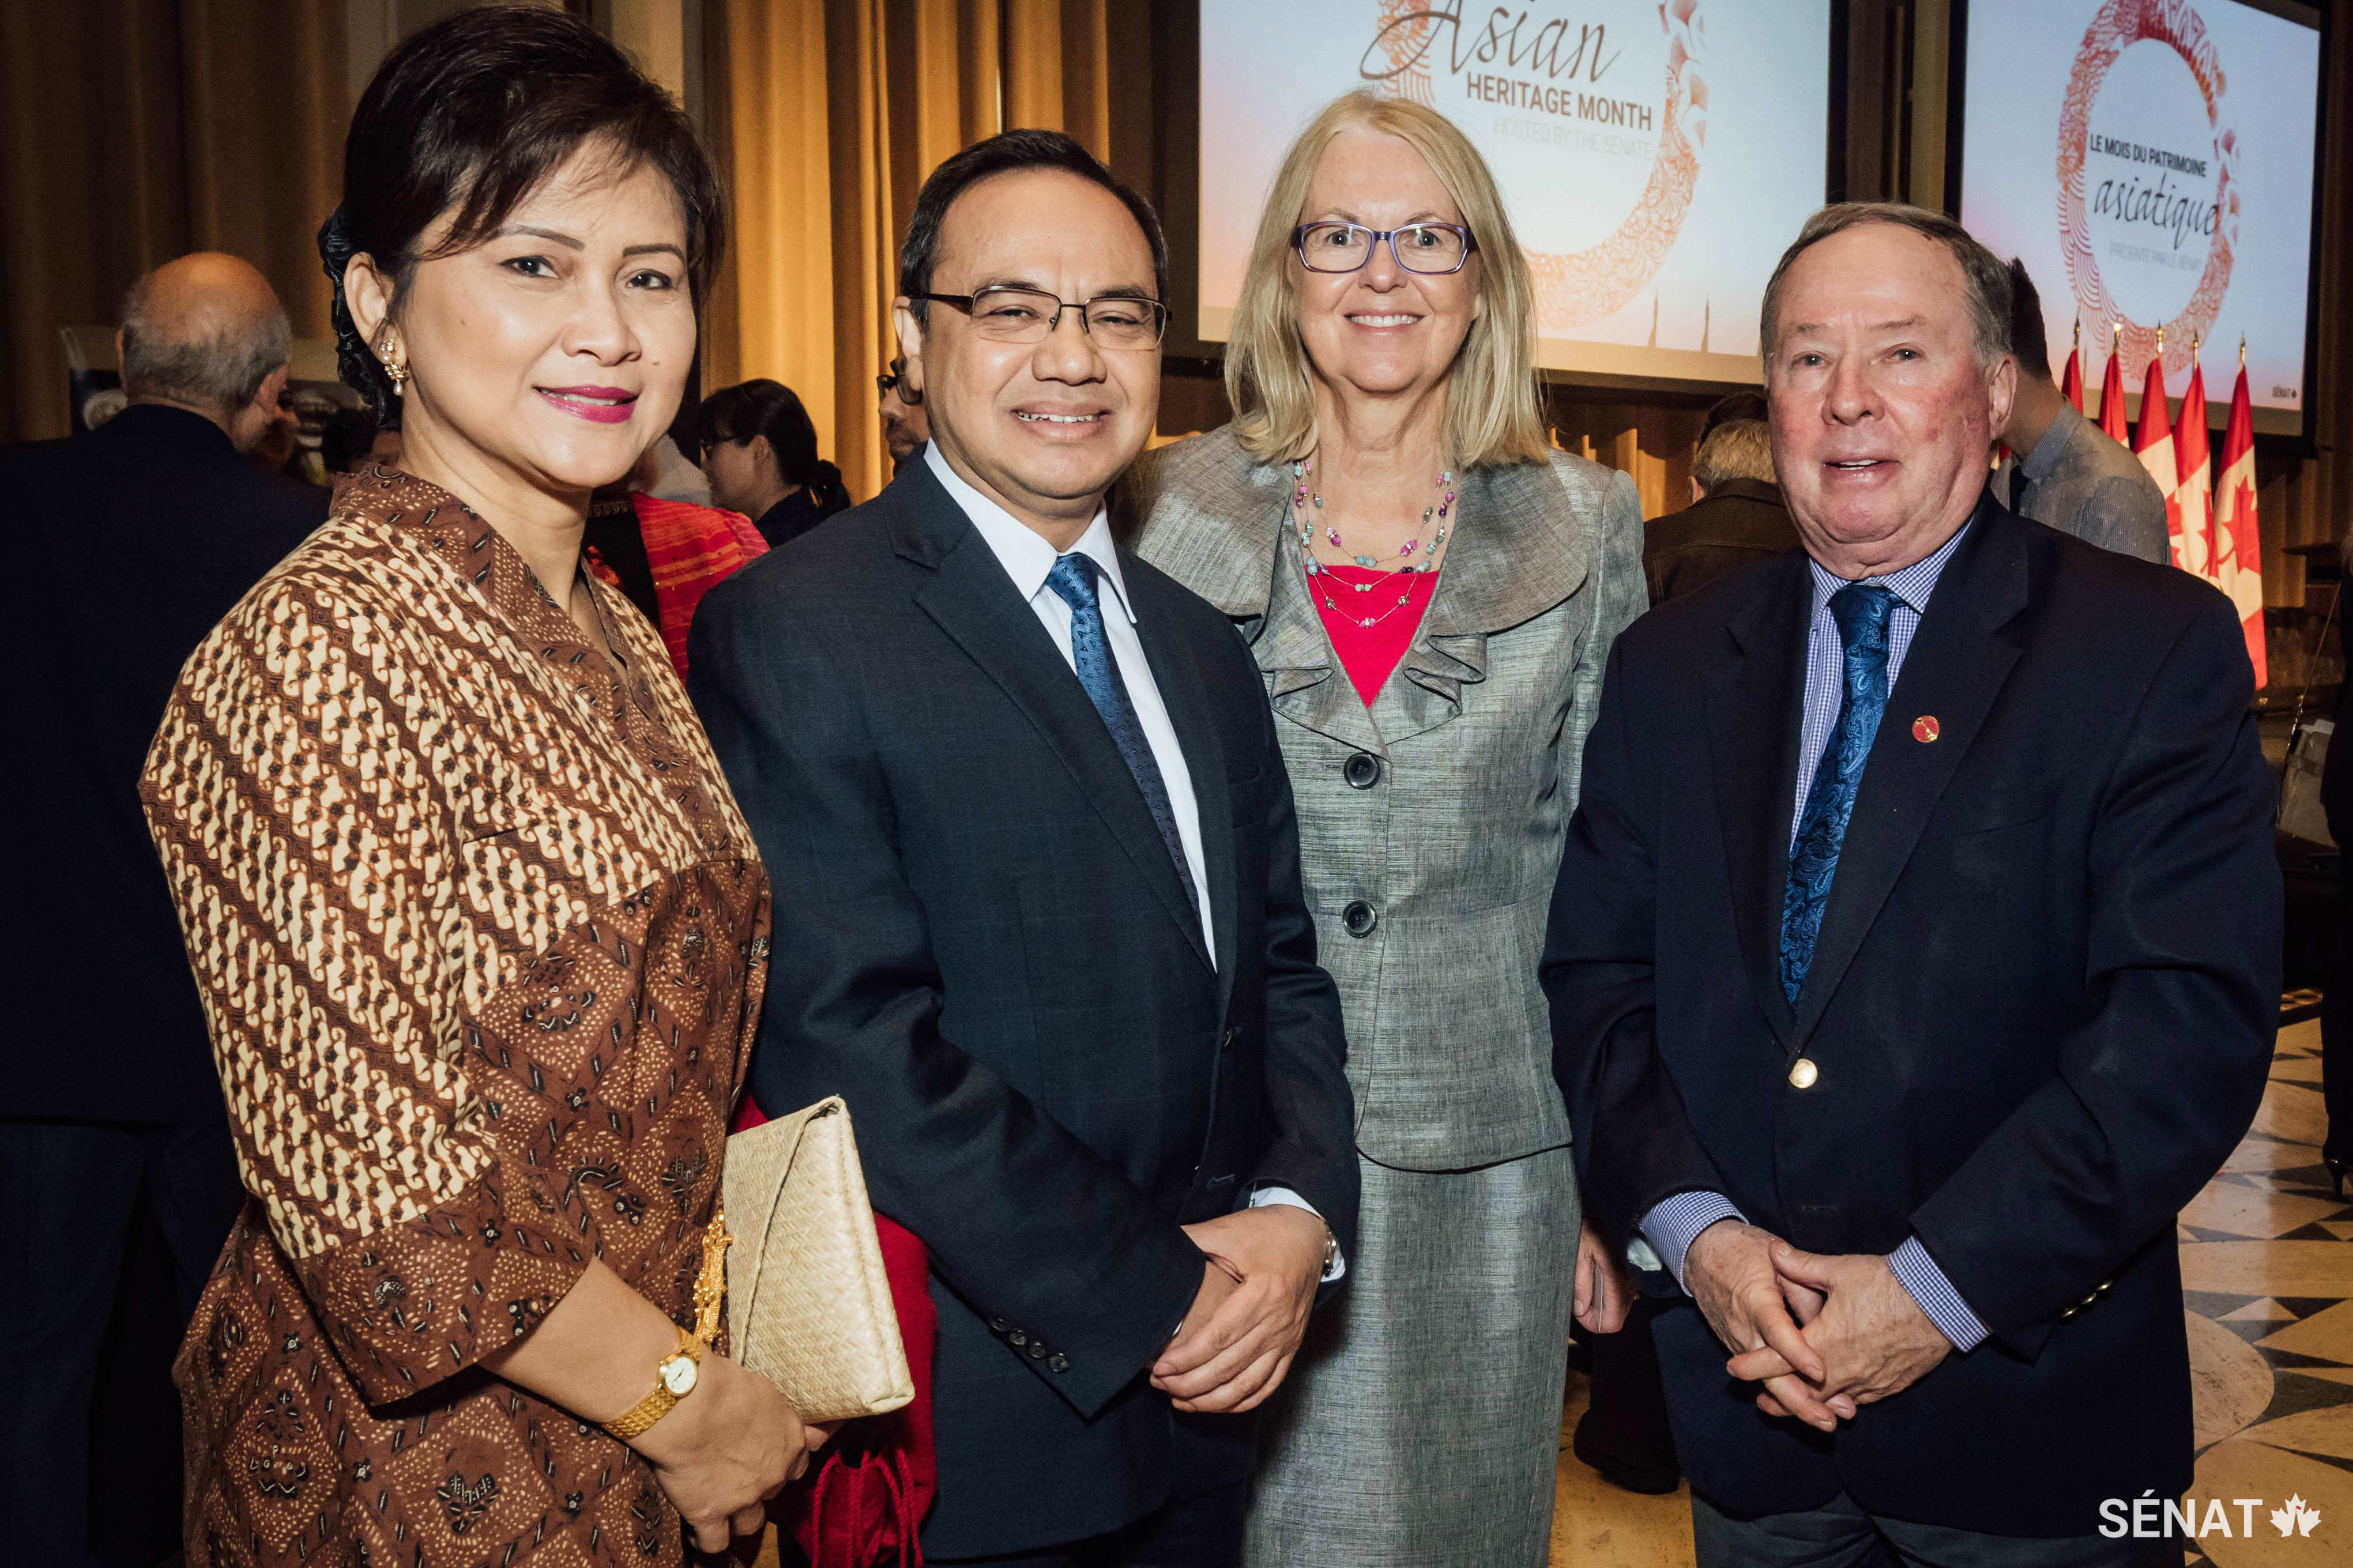 Teuku Faizasyah, ambassadeur de l’Indonésie au Canada (deuxième à partir de la gauche) et sa femme Andis Faizasyah (à gauche), en compagnie de la sénatrice Jane Cordy et du sénateur Jim Munson.